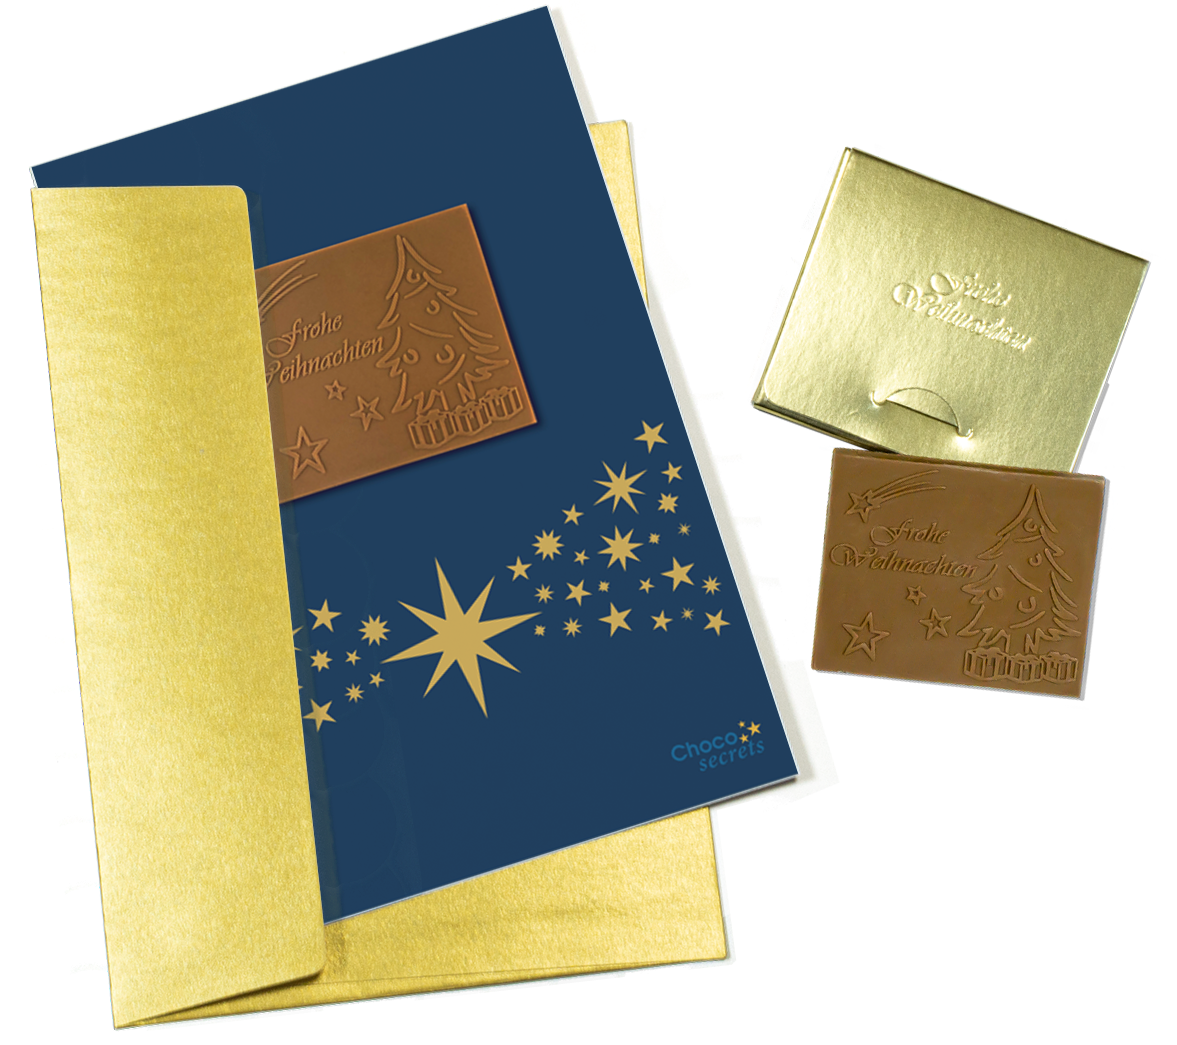 Cartes de Noël avec chocolat en relief dans une boîte dorée, lot de 5, motif de carte : ciel bleu foncé avec bande étoilée, chocolat en relief : "Frohe Weihnachten", enveloppe en or 